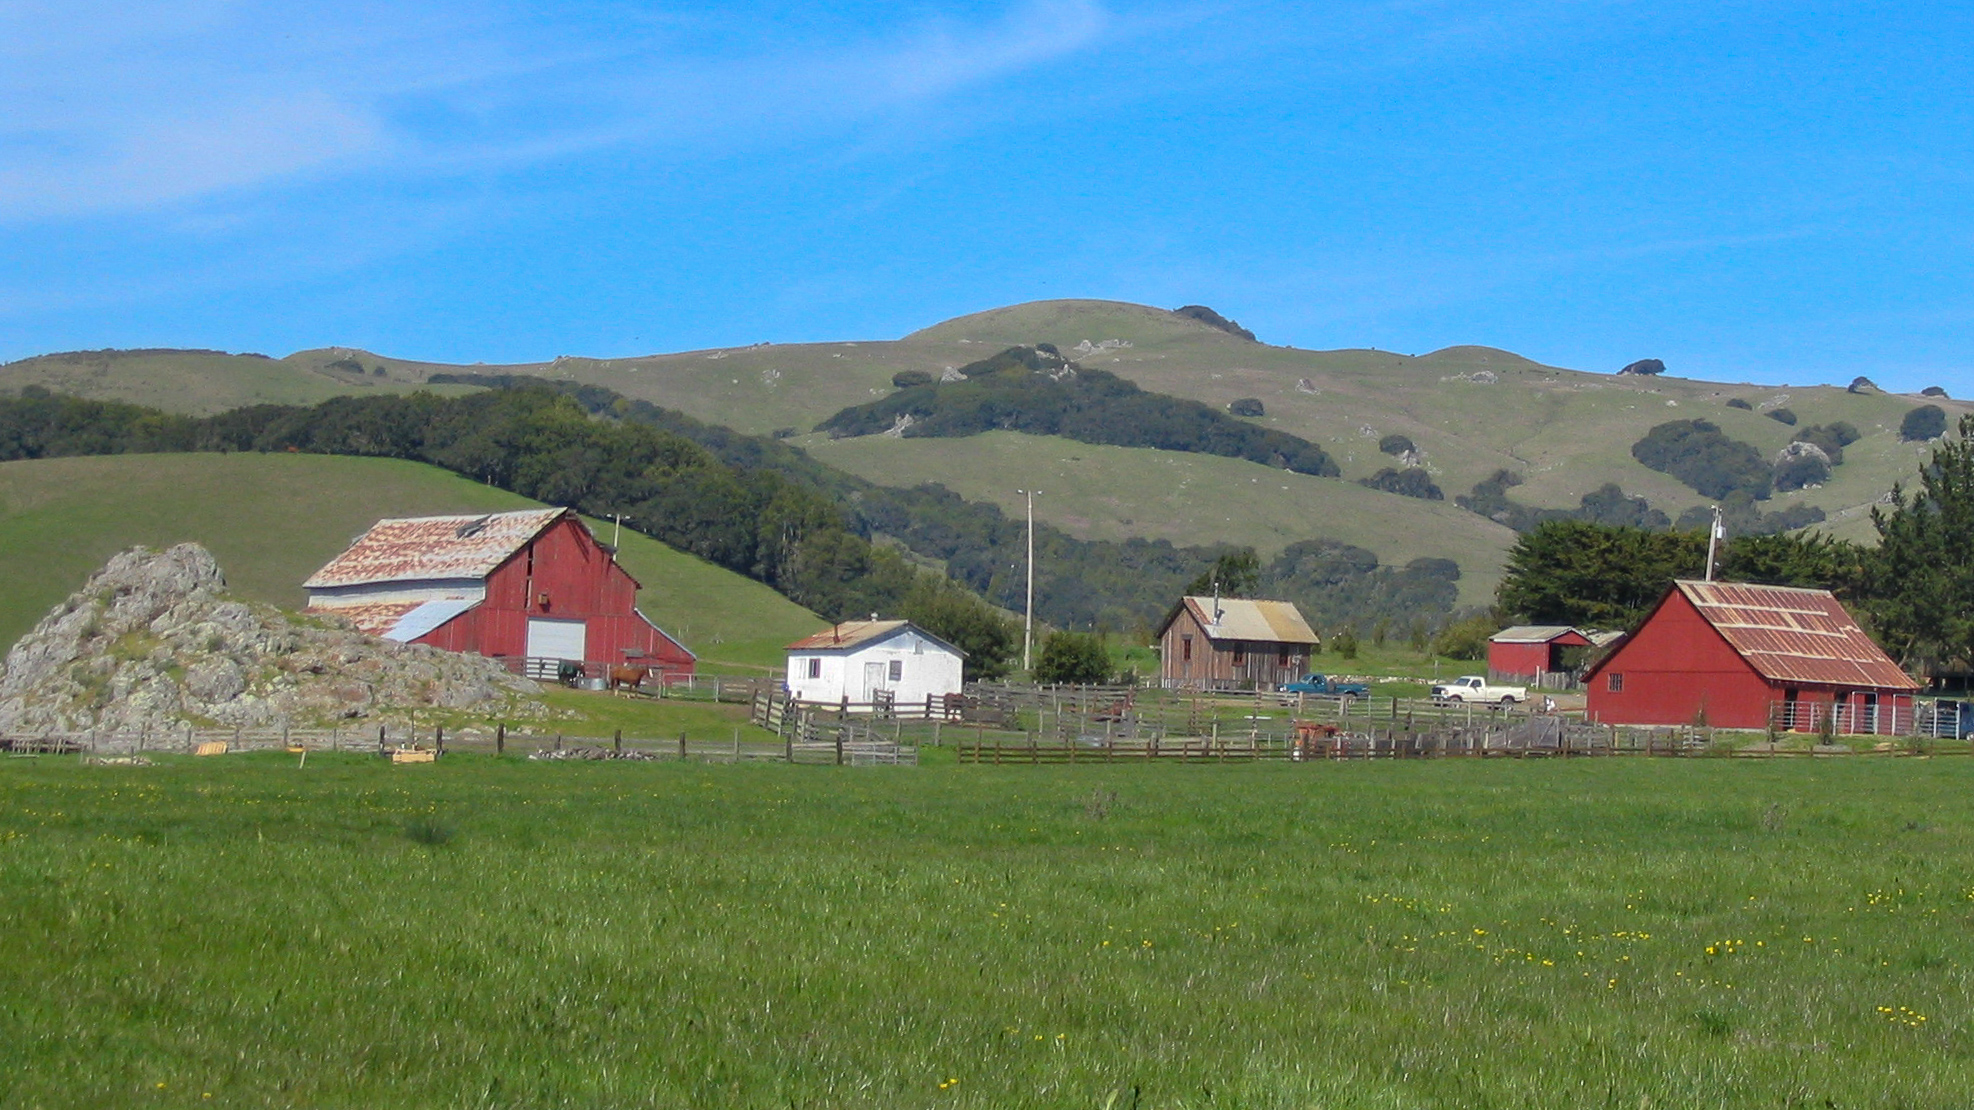 Farm with barn and other farm buildings near hills.